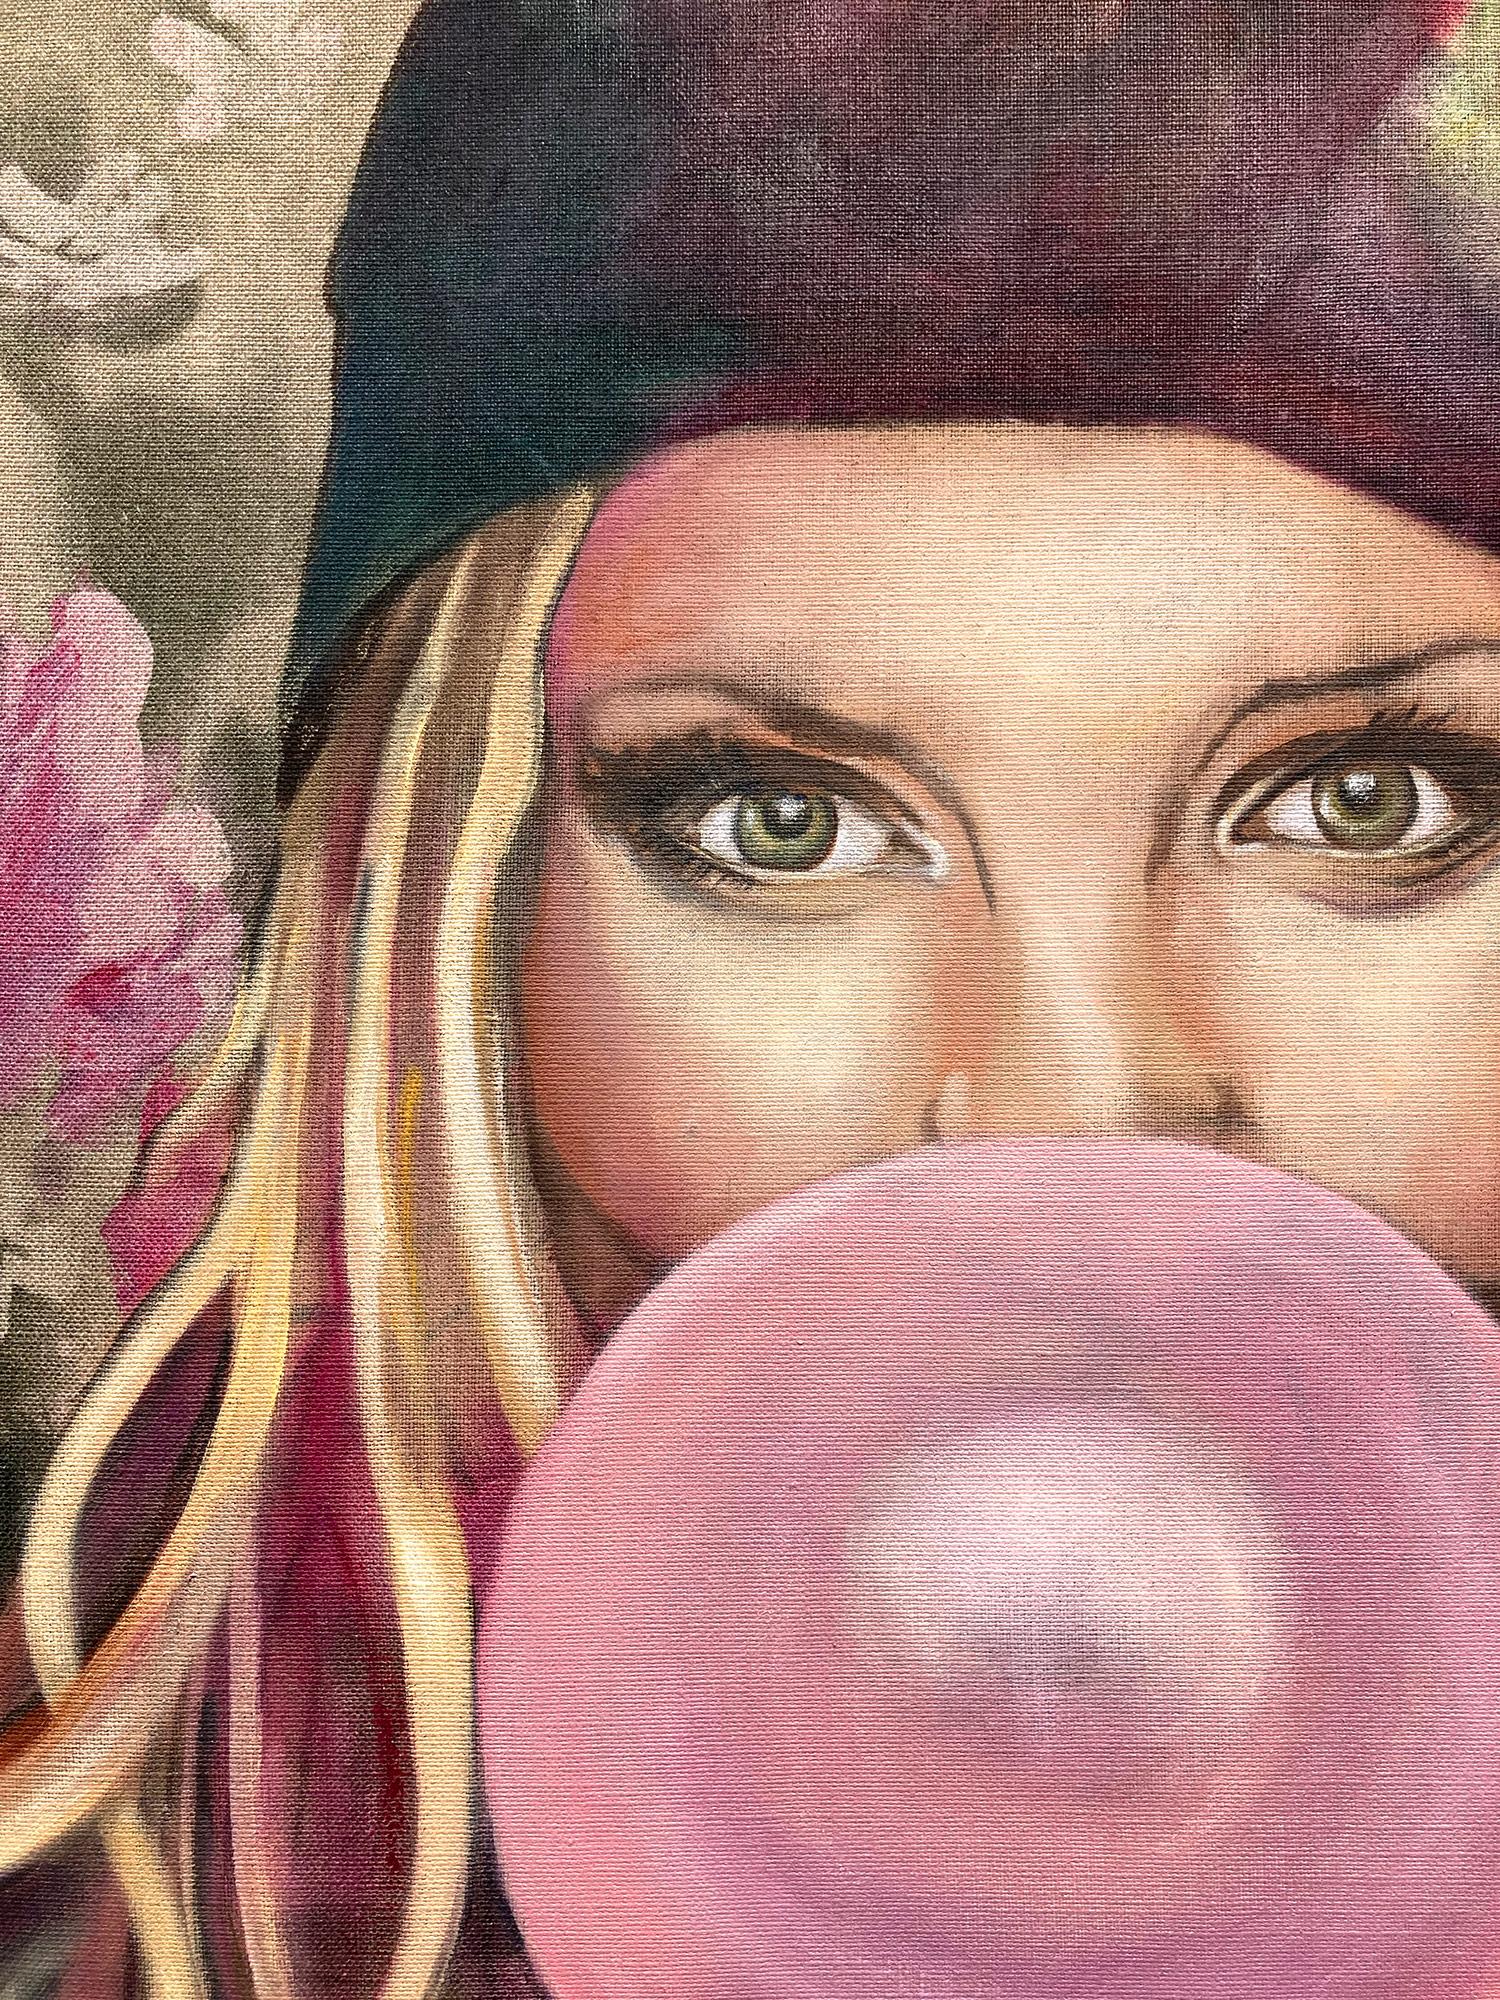 Zeitgenössisches Ölgemälde „Beatrice“ auf Stoff, Mädchen mit Blasen Gummi (Pop-Art), Painting, von Eva O’Donovan 